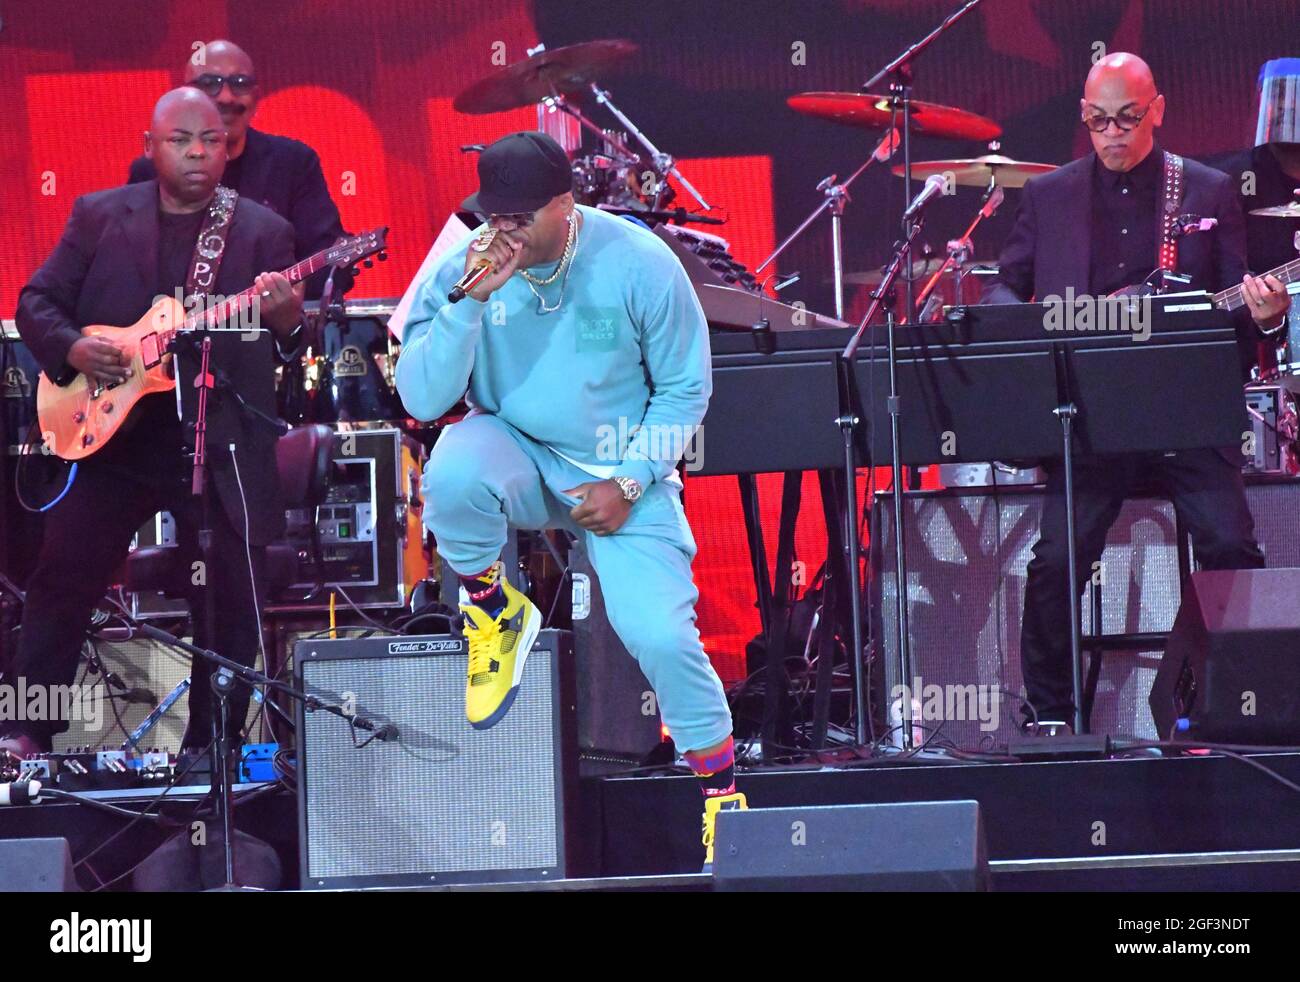 NEW YORK, NEW YORK - AGOSTO 21: LL Cool J si esibisce sul palco durante We Love NYC: The Homecoming Concert prodotto da NYC, Clive Davis e Live Nation il 21 agosto 2021 a New York City. (Foto di John Atashian) Foto Stock